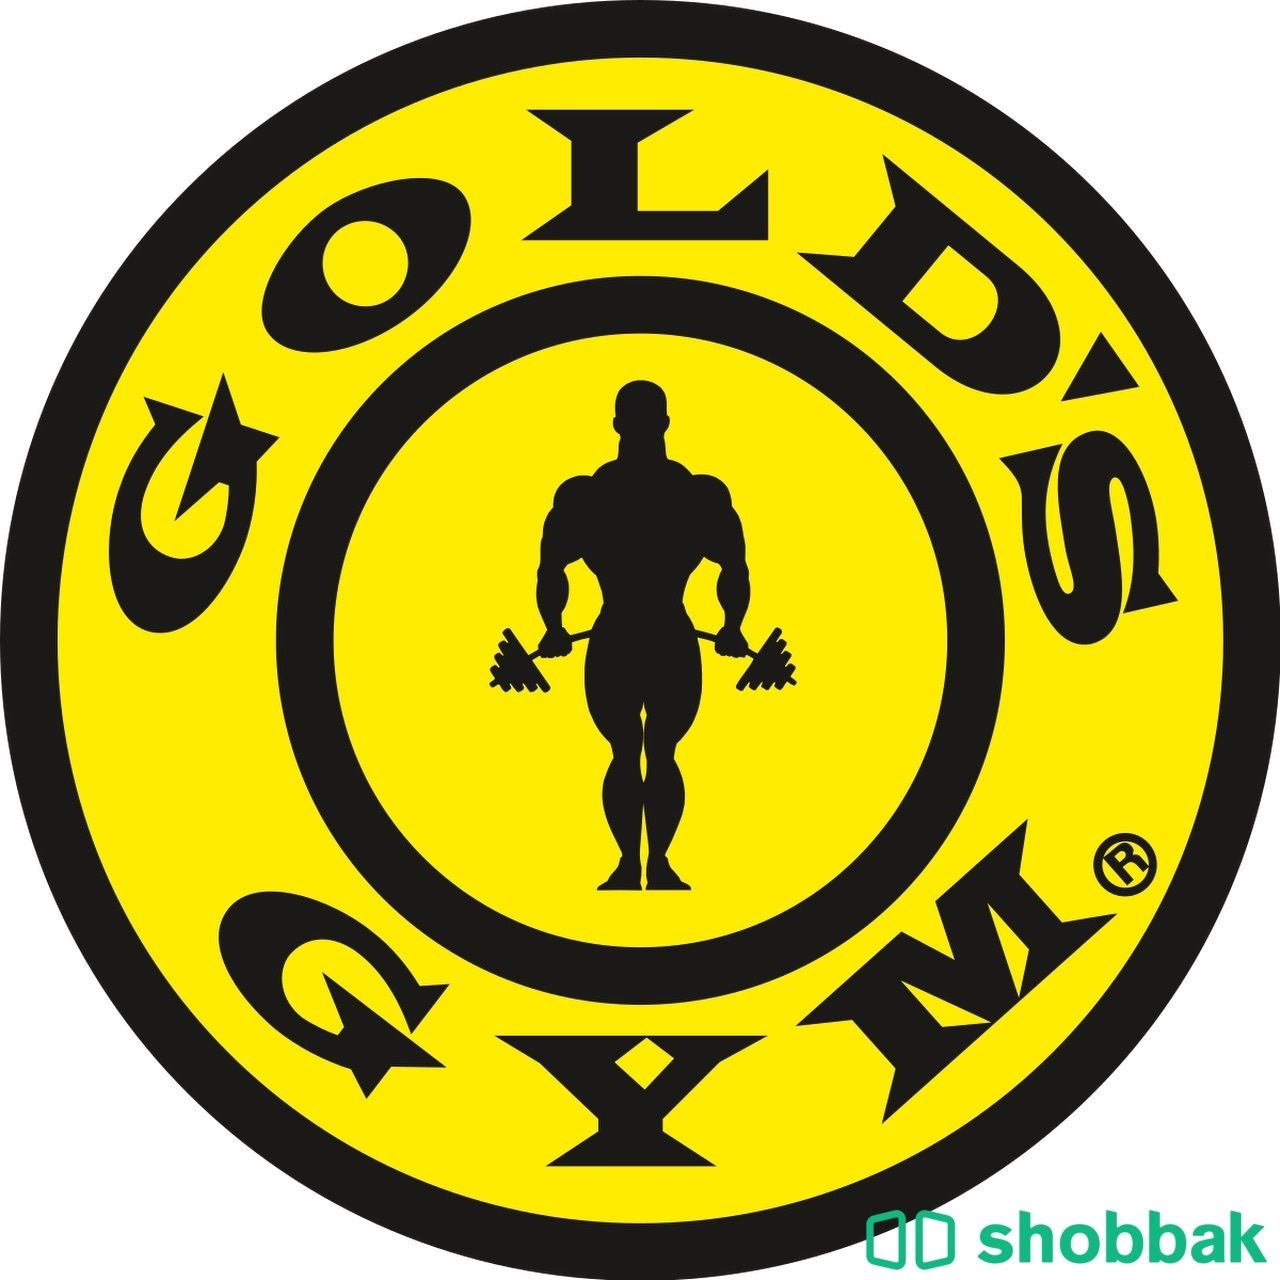 اشتراك نادي رجالي للبيع Gold’s Gym الرياض Shobbak Saudi Arabia